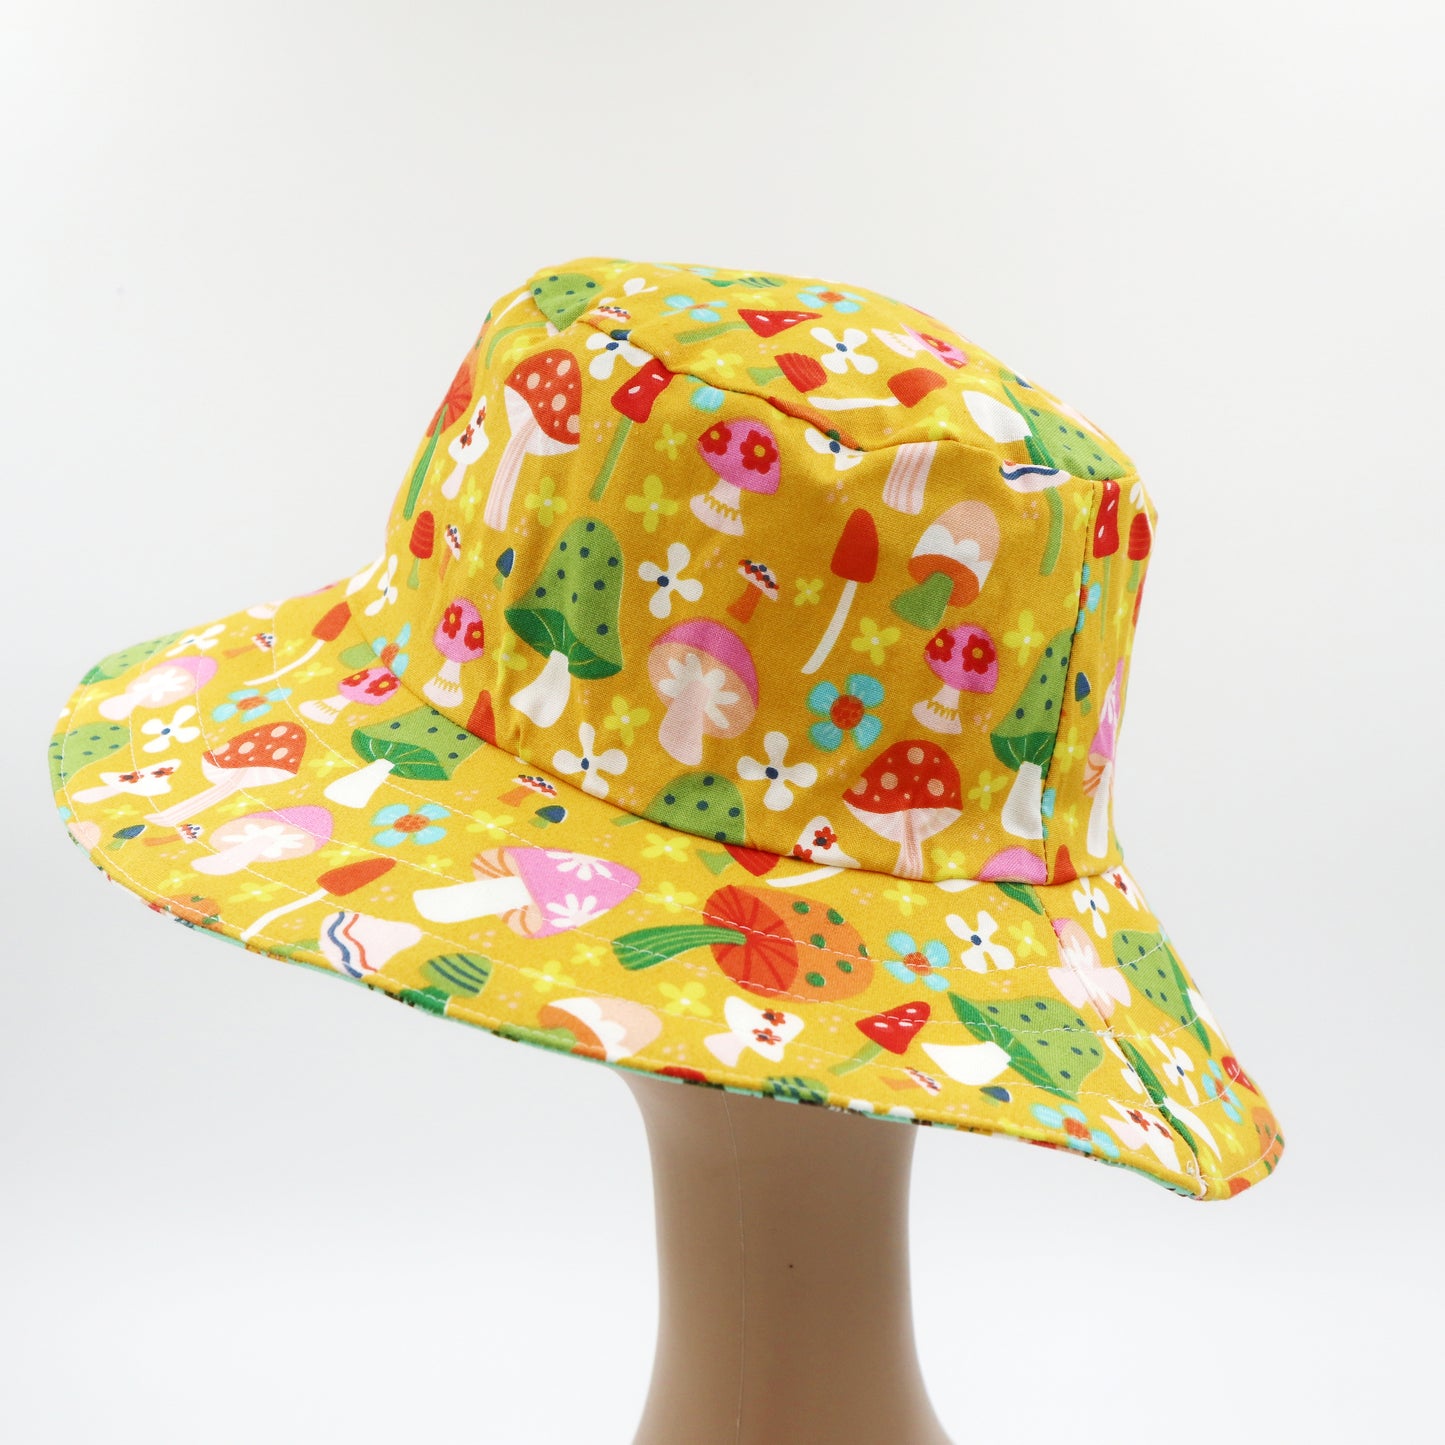 Reversible Sun Hat - Ladies & Girls sizes - vintage caravan